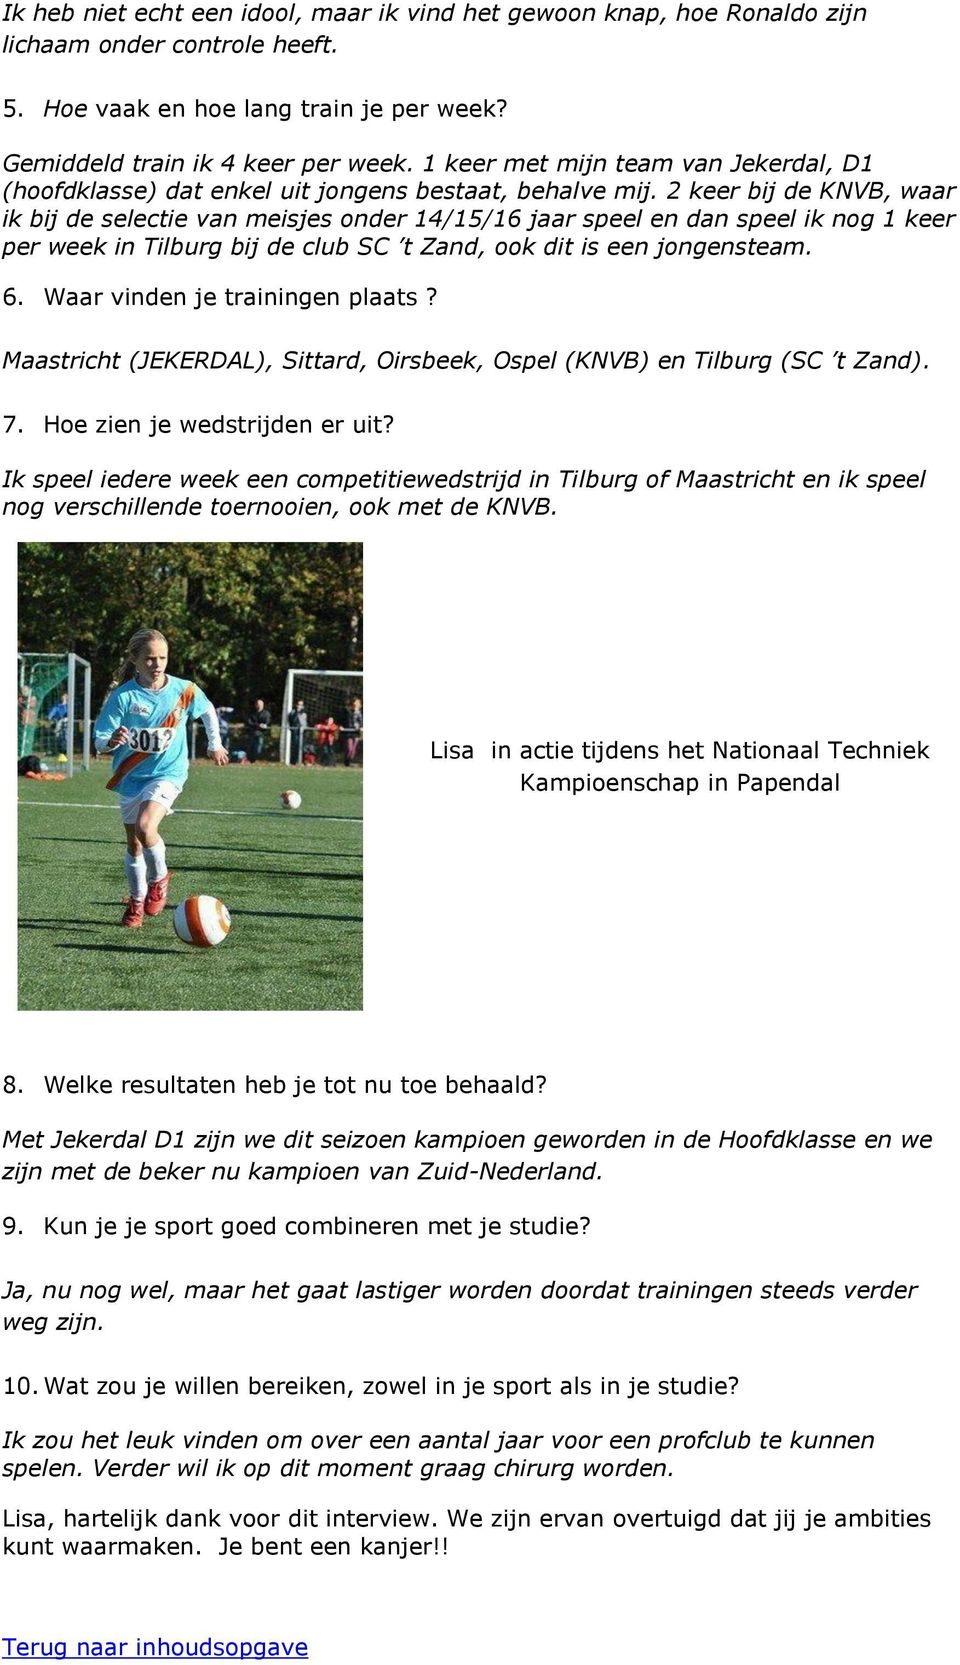 2 keer bij de KNVB, waar ik bij de selectie van meisjes onder 14/15/16 jaar speel en dan speel ik nog 1 keer per week in Tilburg bij de club SC t Zand, ook dit is een jongensteam. 6.